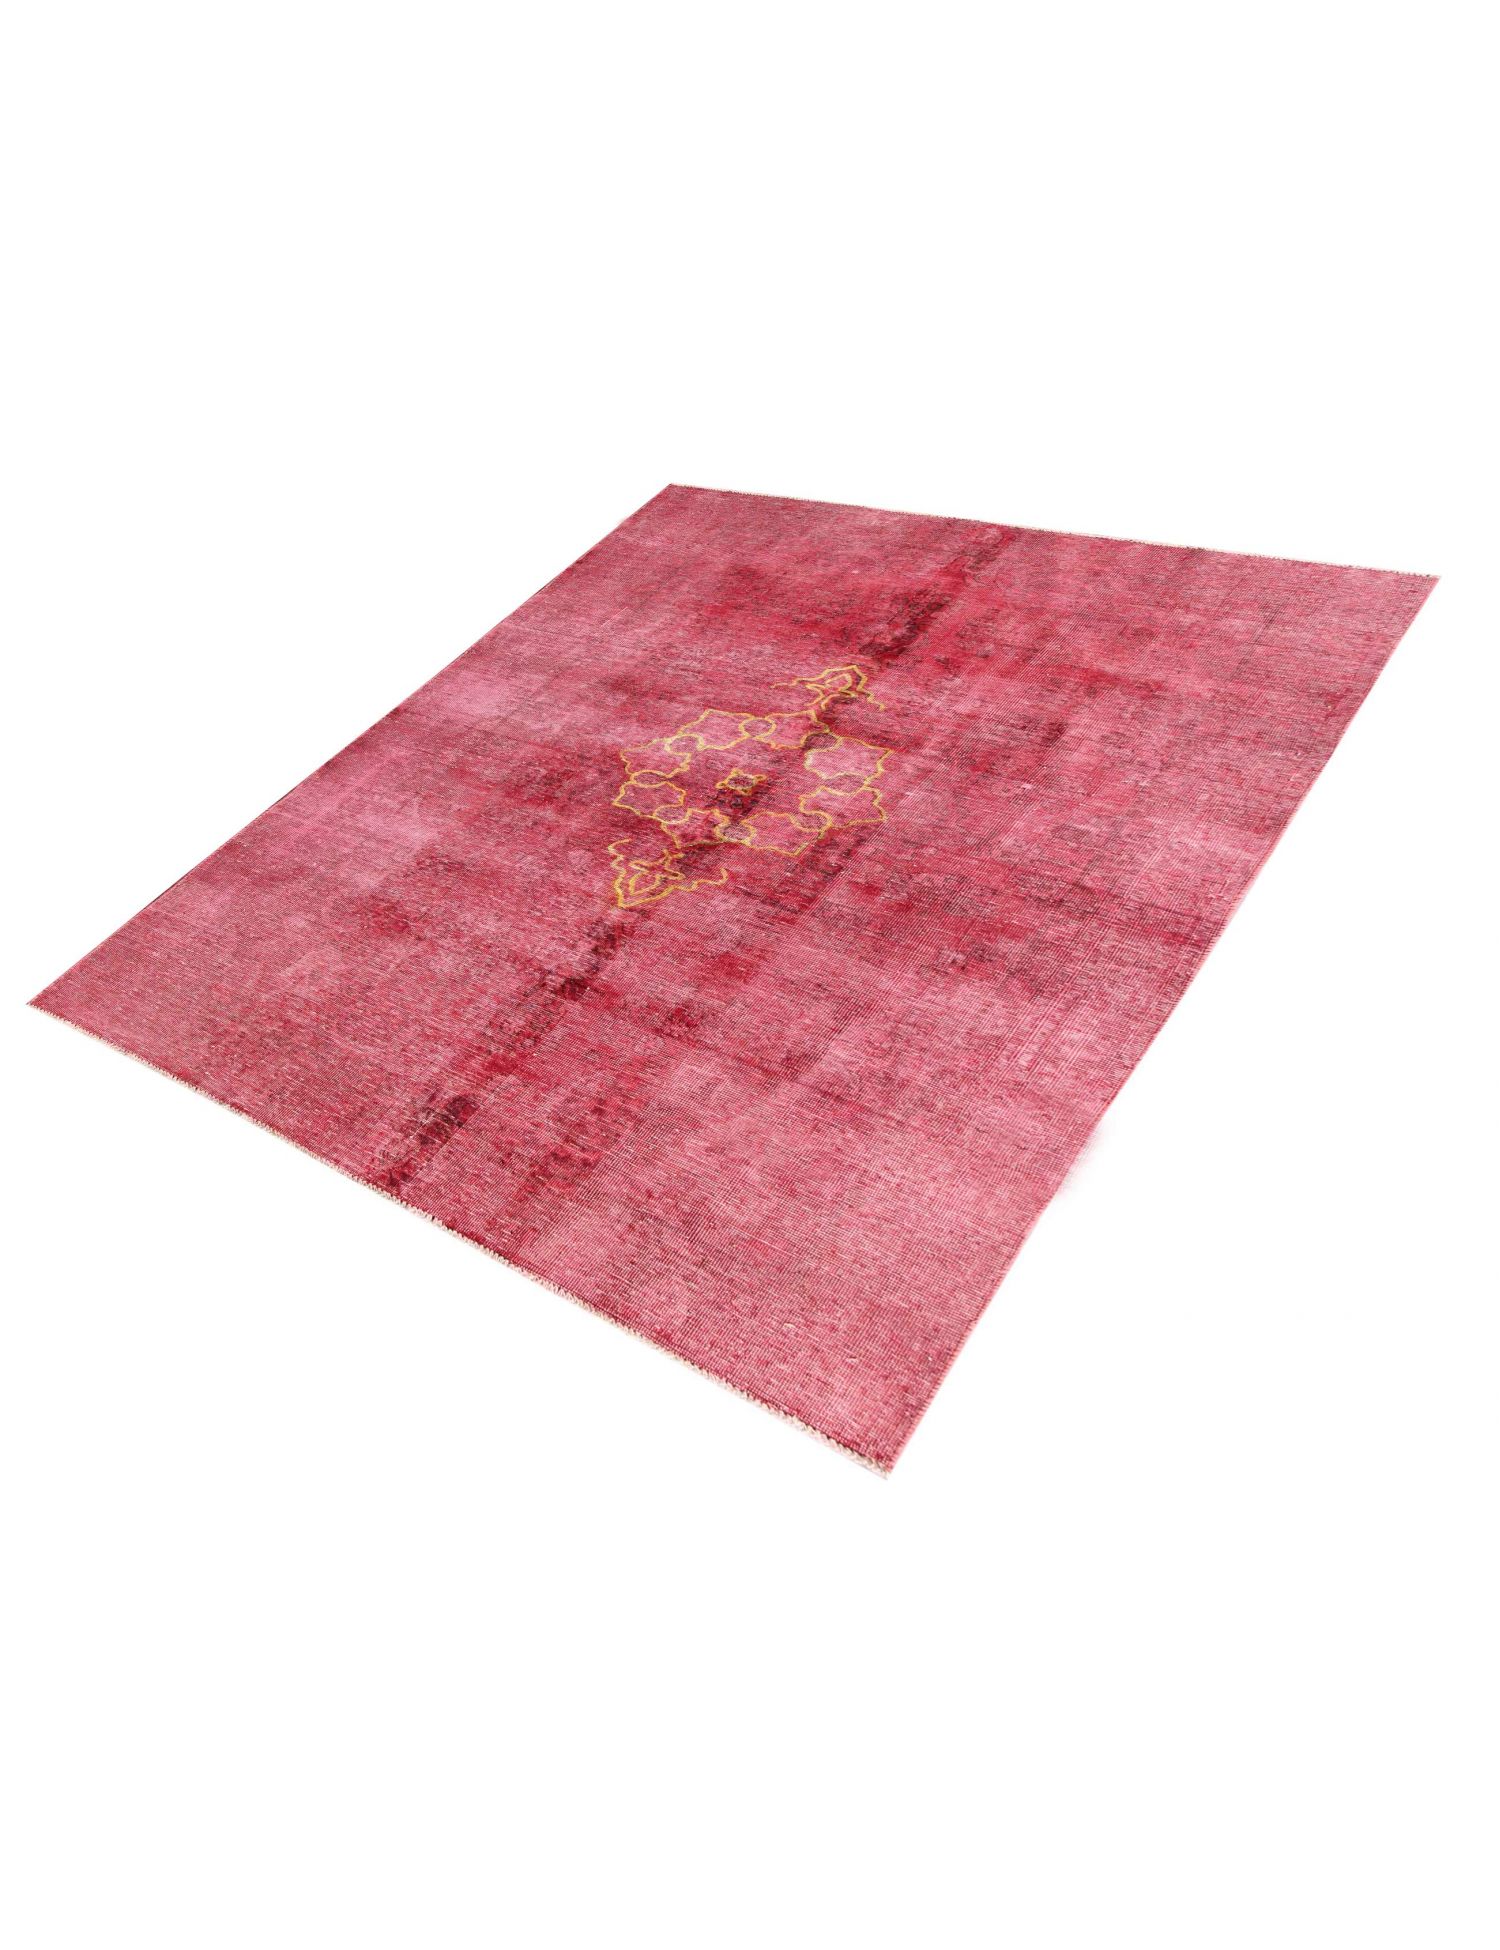 Persischer Vintage Teppich  rot <br/>270 x 188 cm